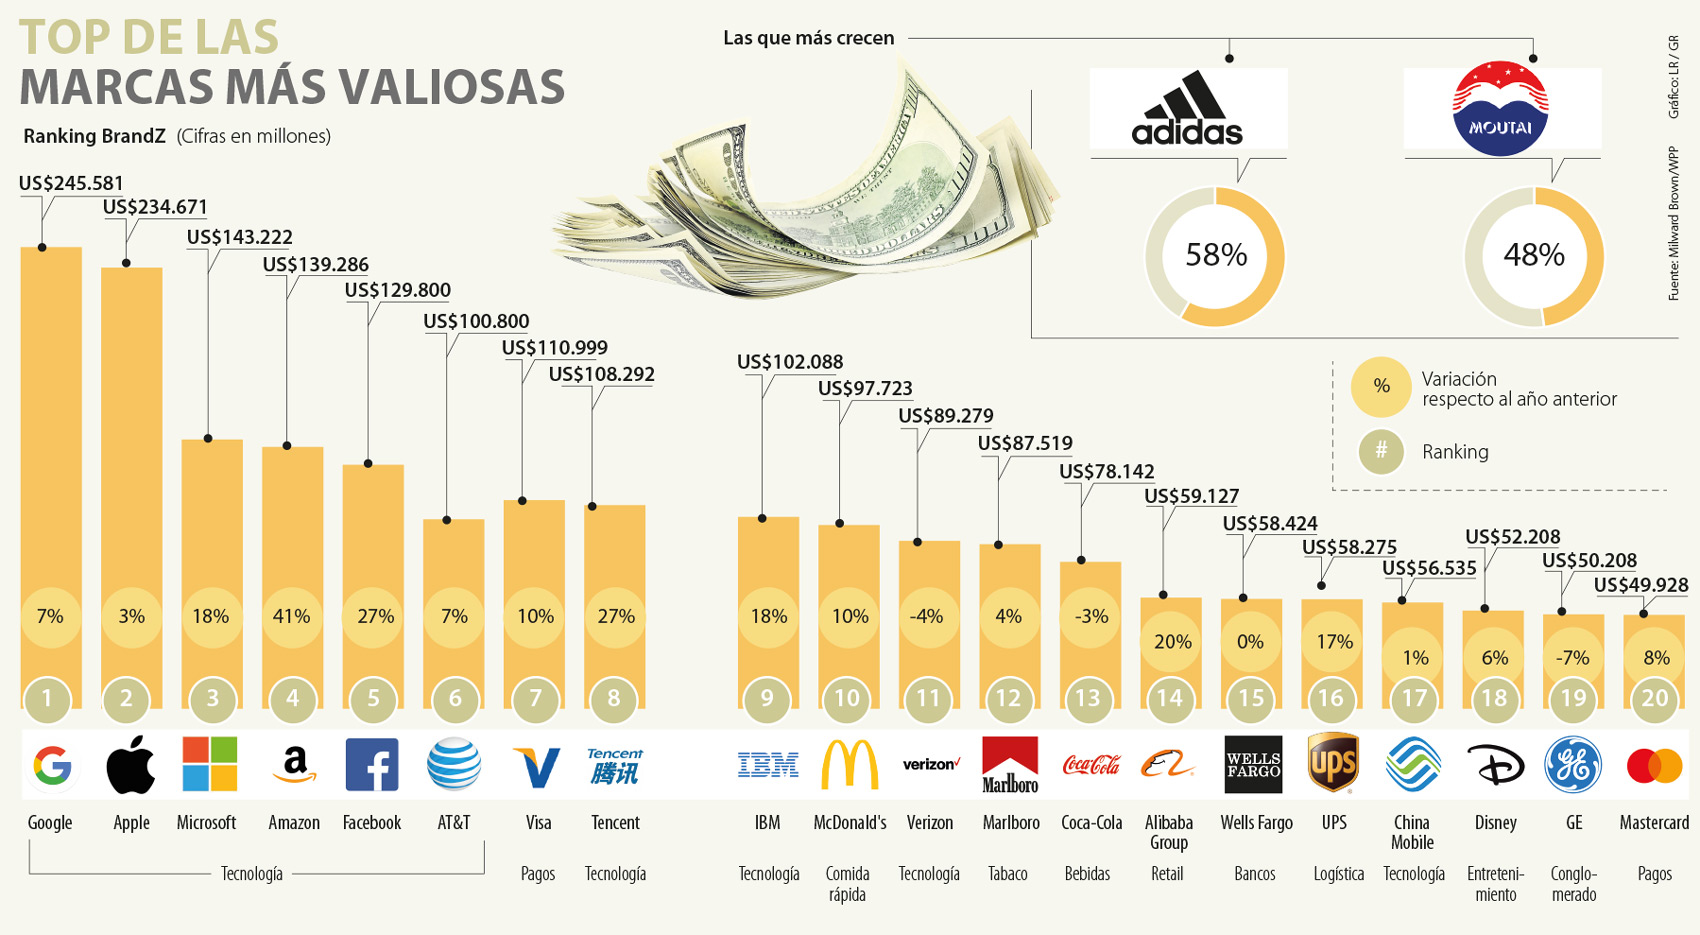 Adidas, la marca que más subió su valor